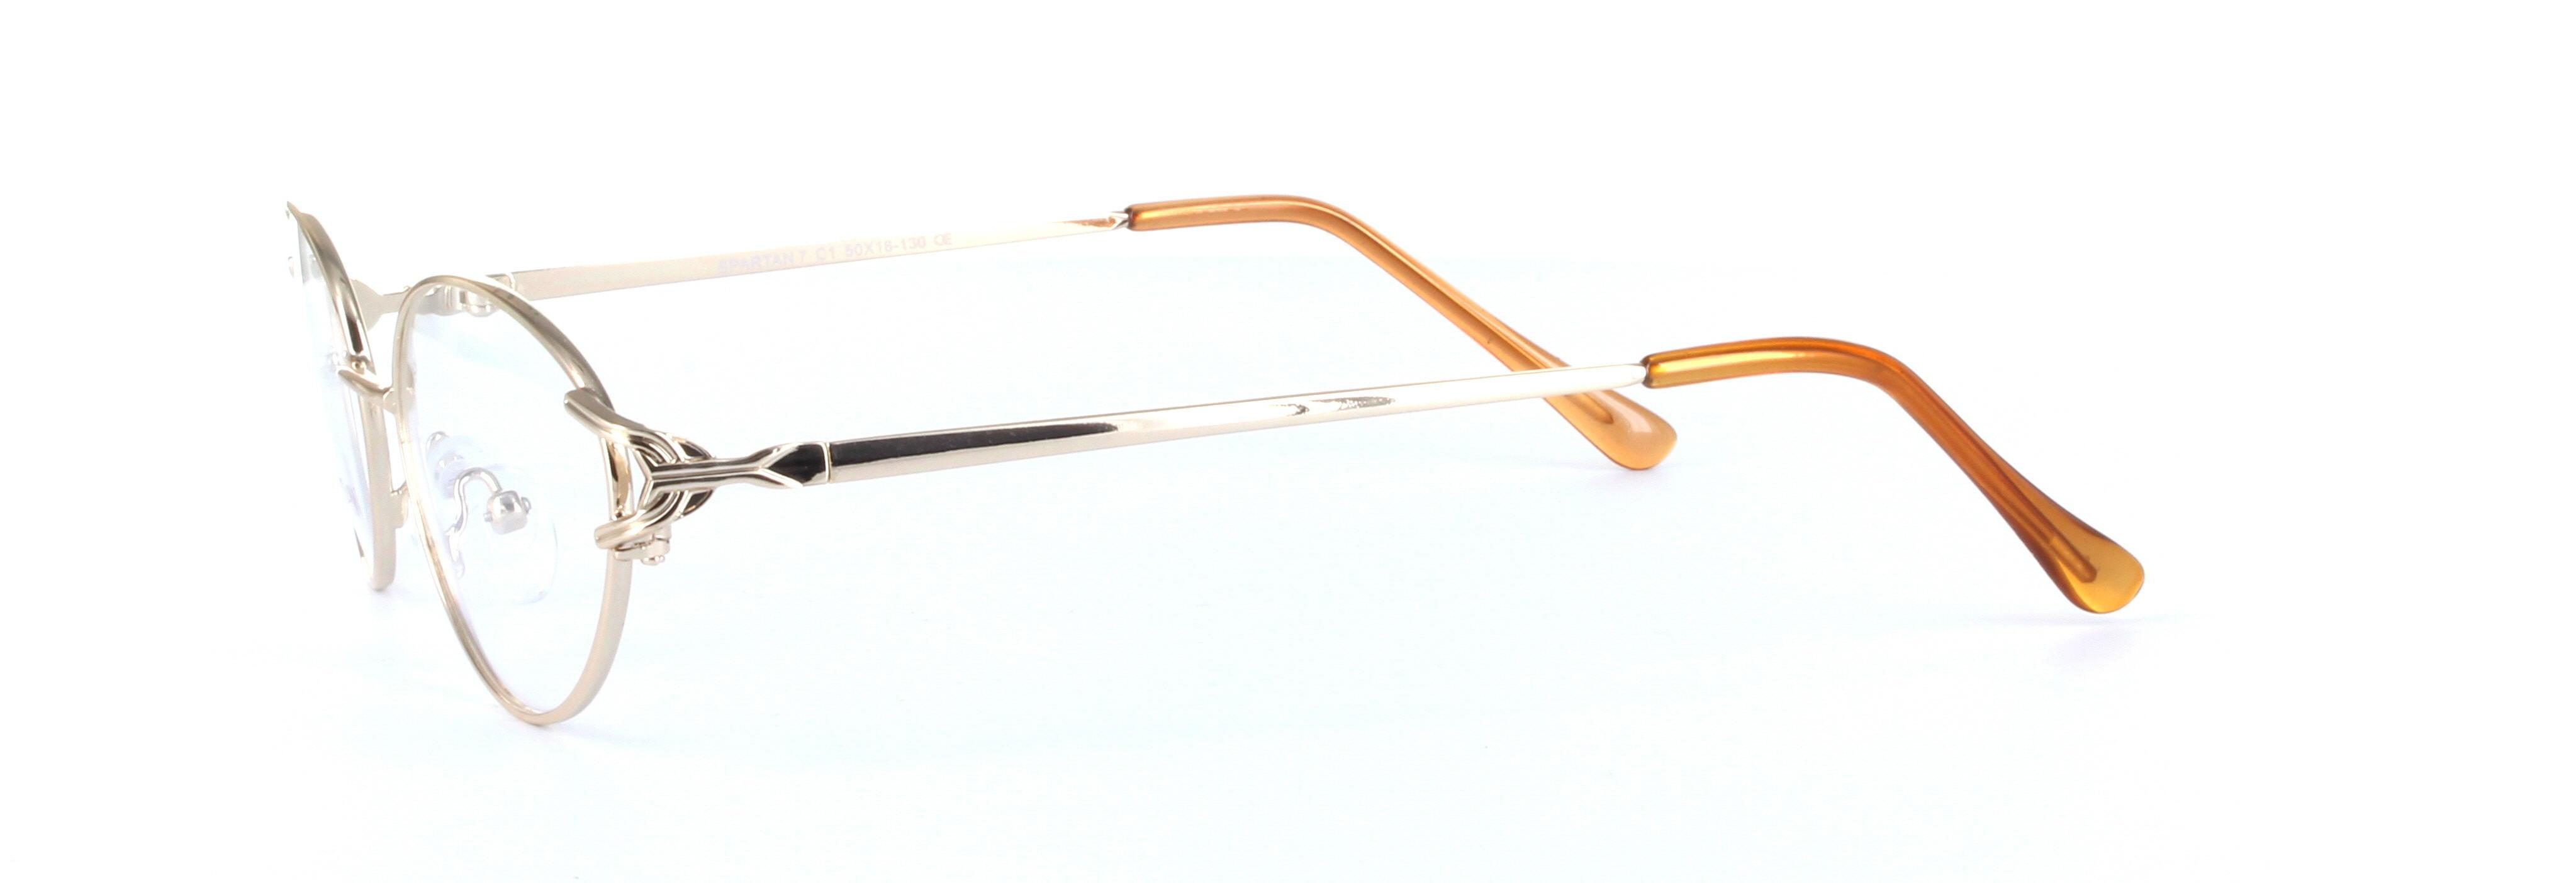 Bella Gold Full Rim Oval Metal Glasses - Image View 2